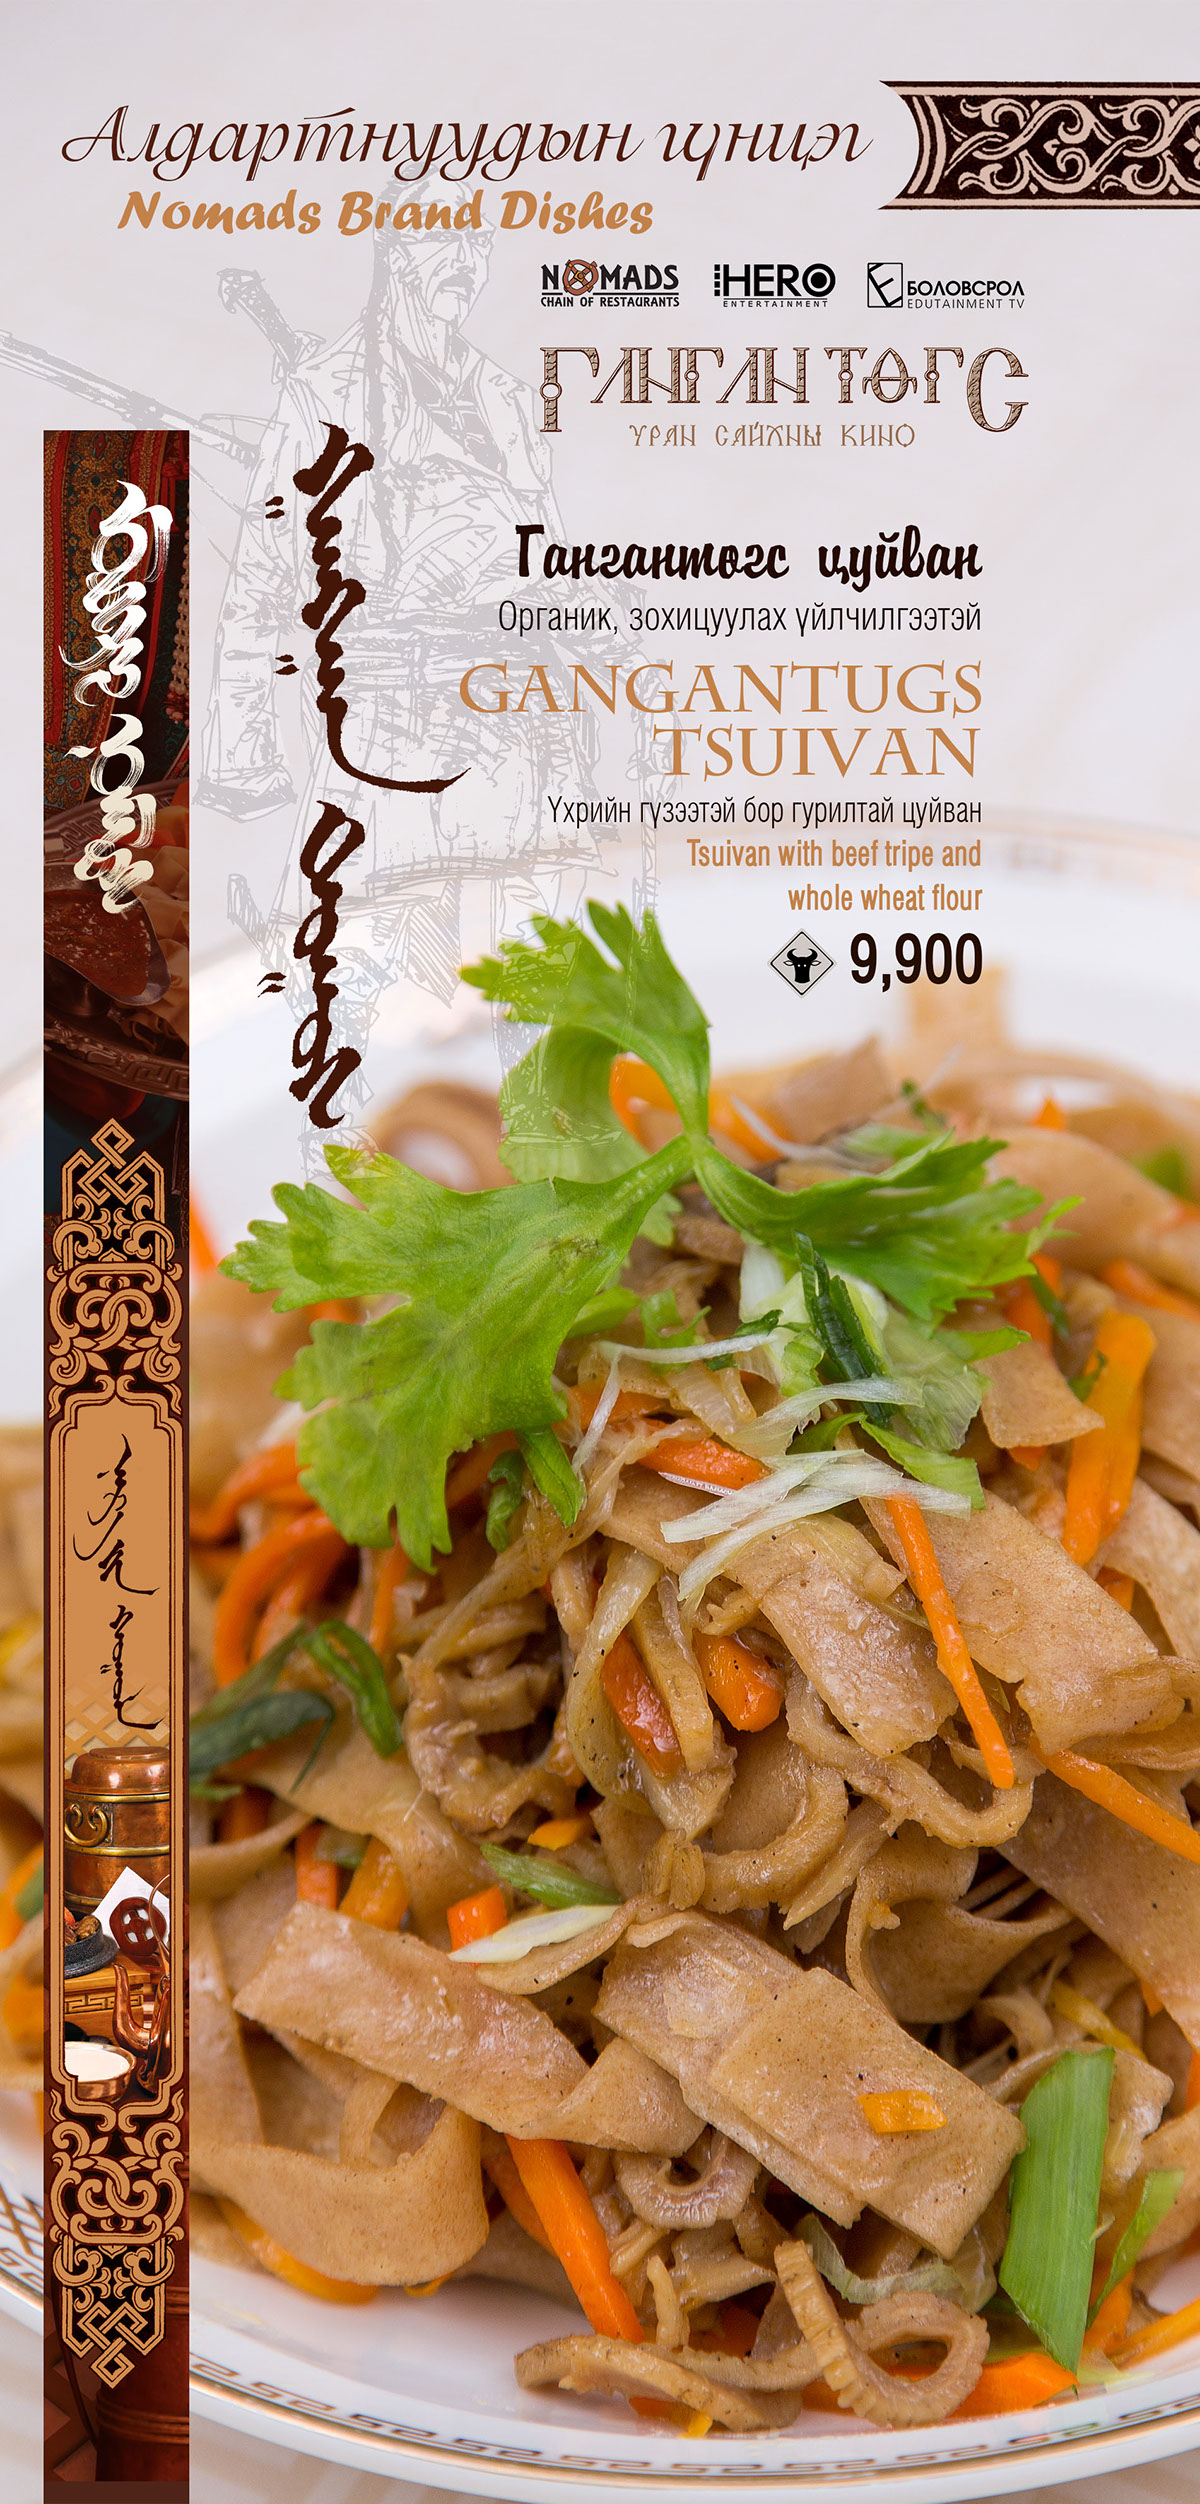 Food  drink menu nomads modern nomads mongolian restaurant eat restaurant meal